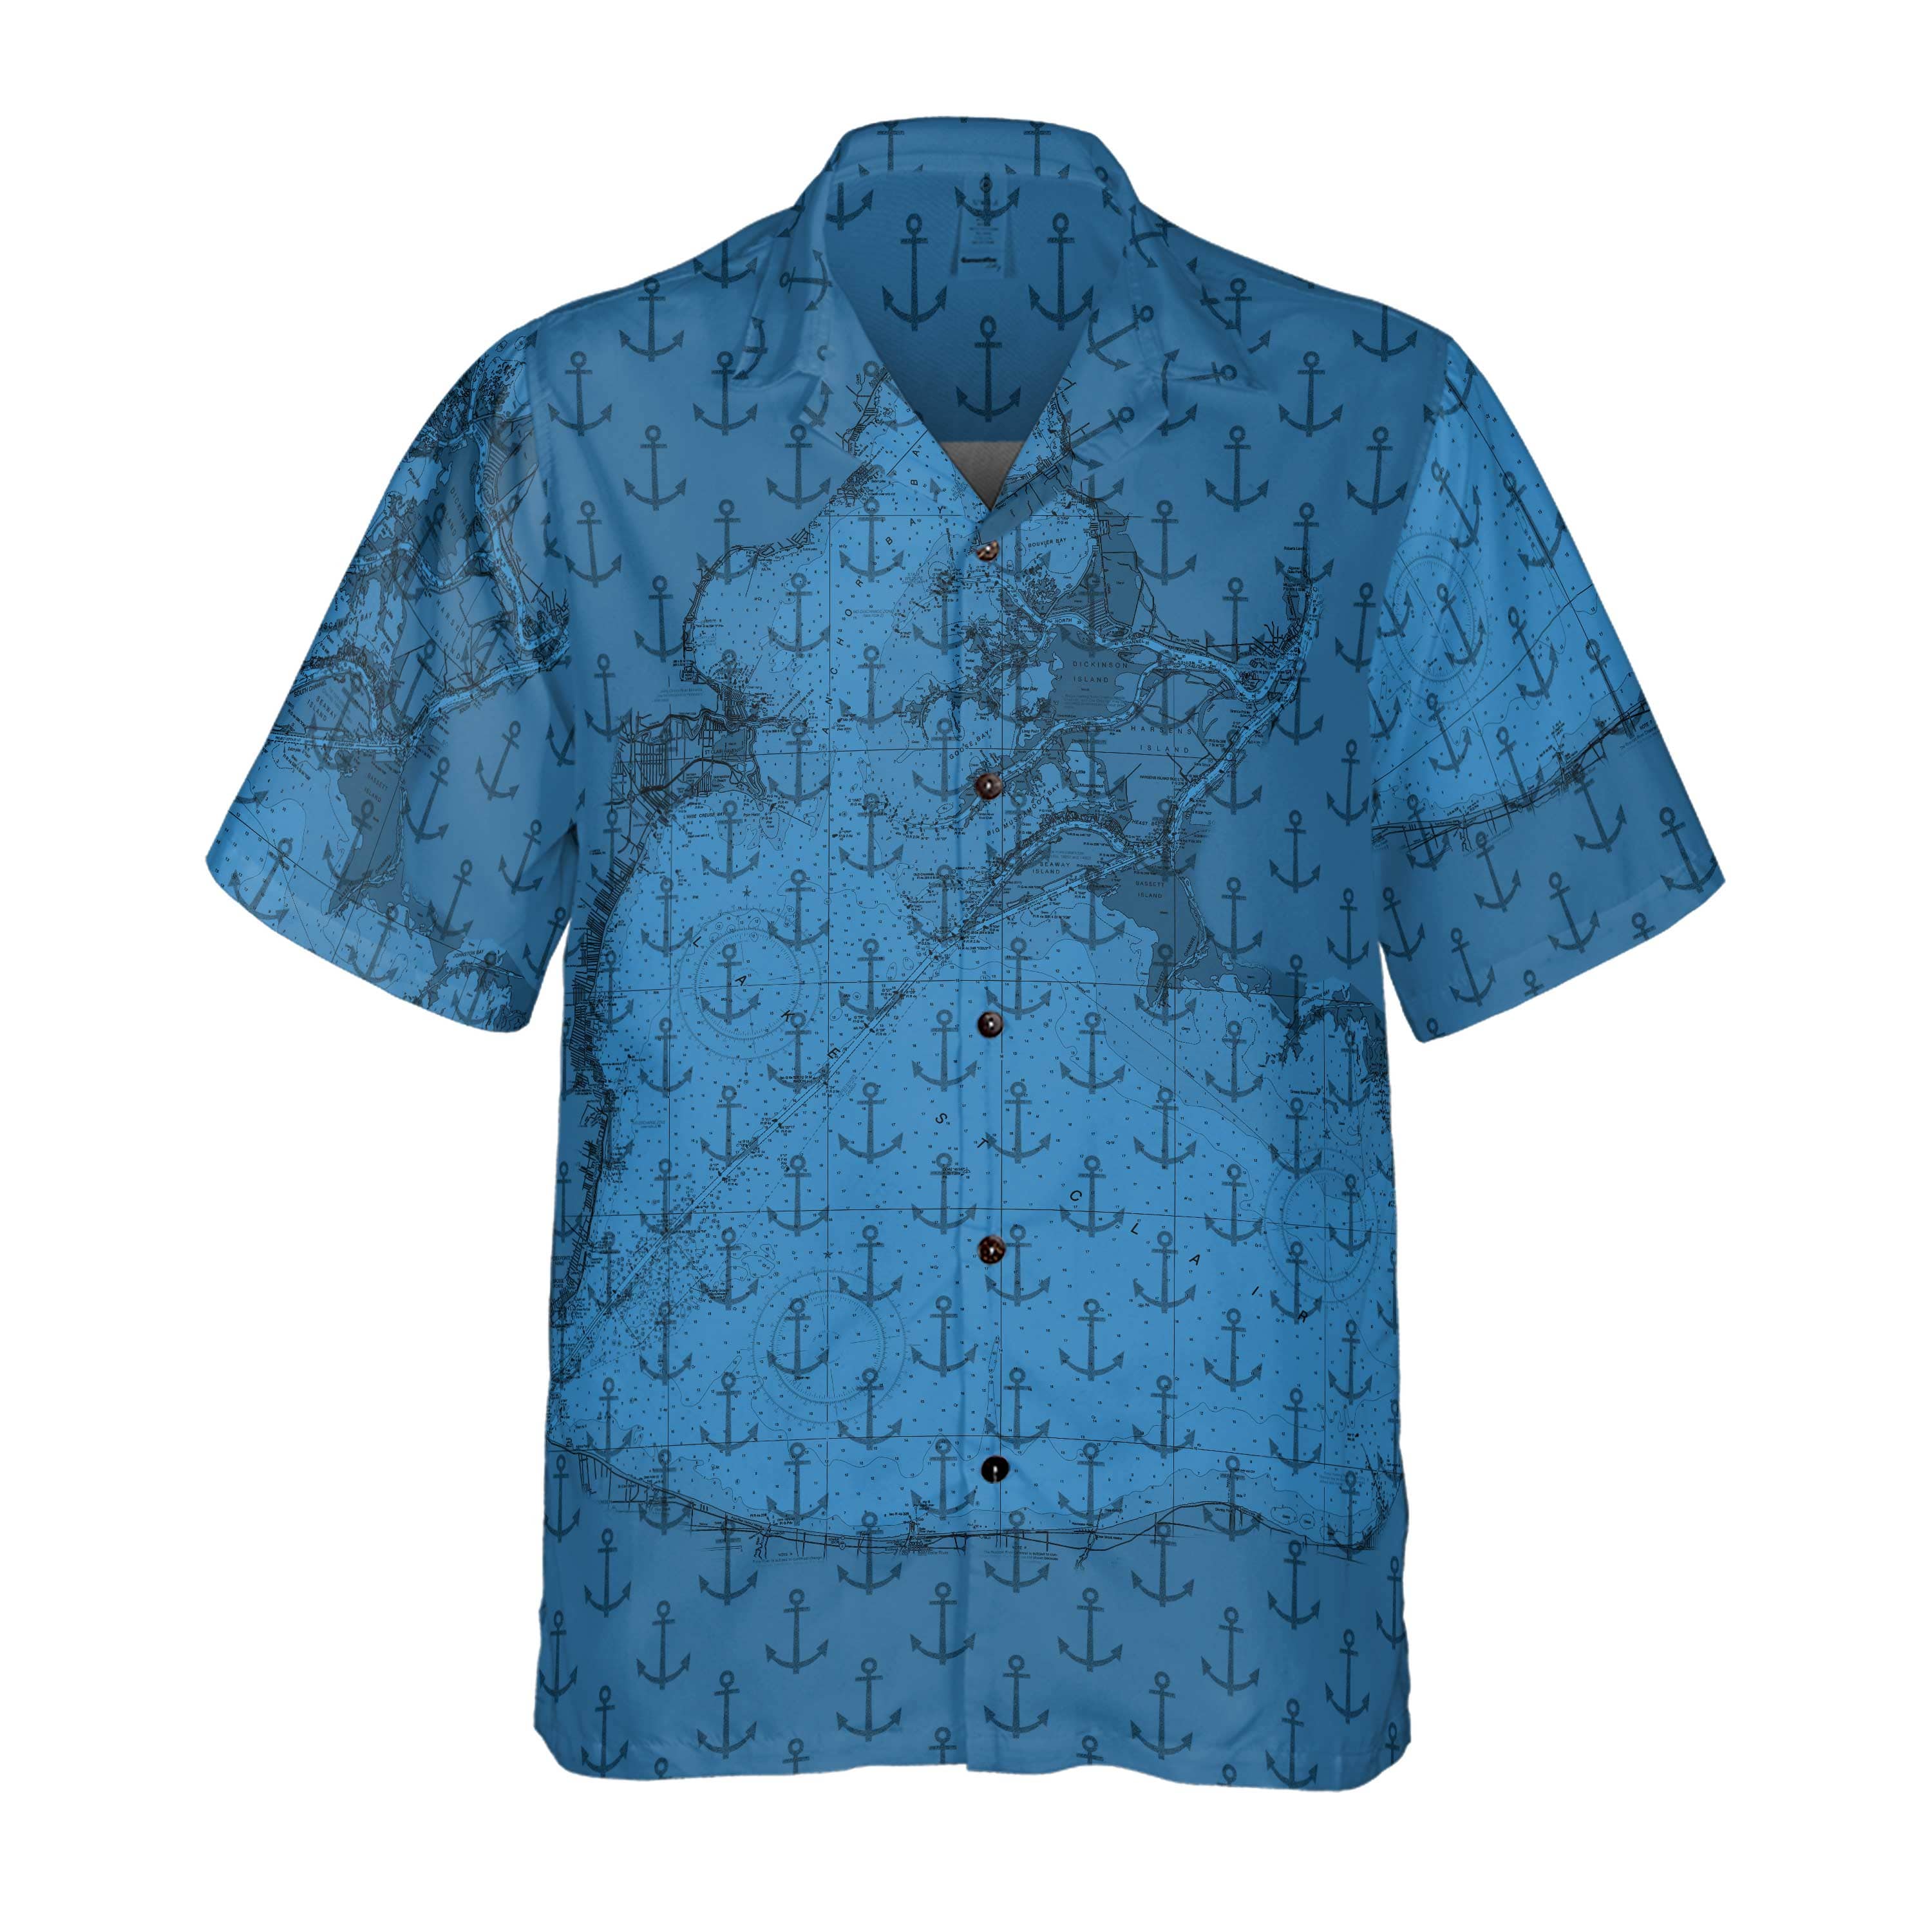 The Lake St Clair Deep Blue Anchors Coconut Button Shirt